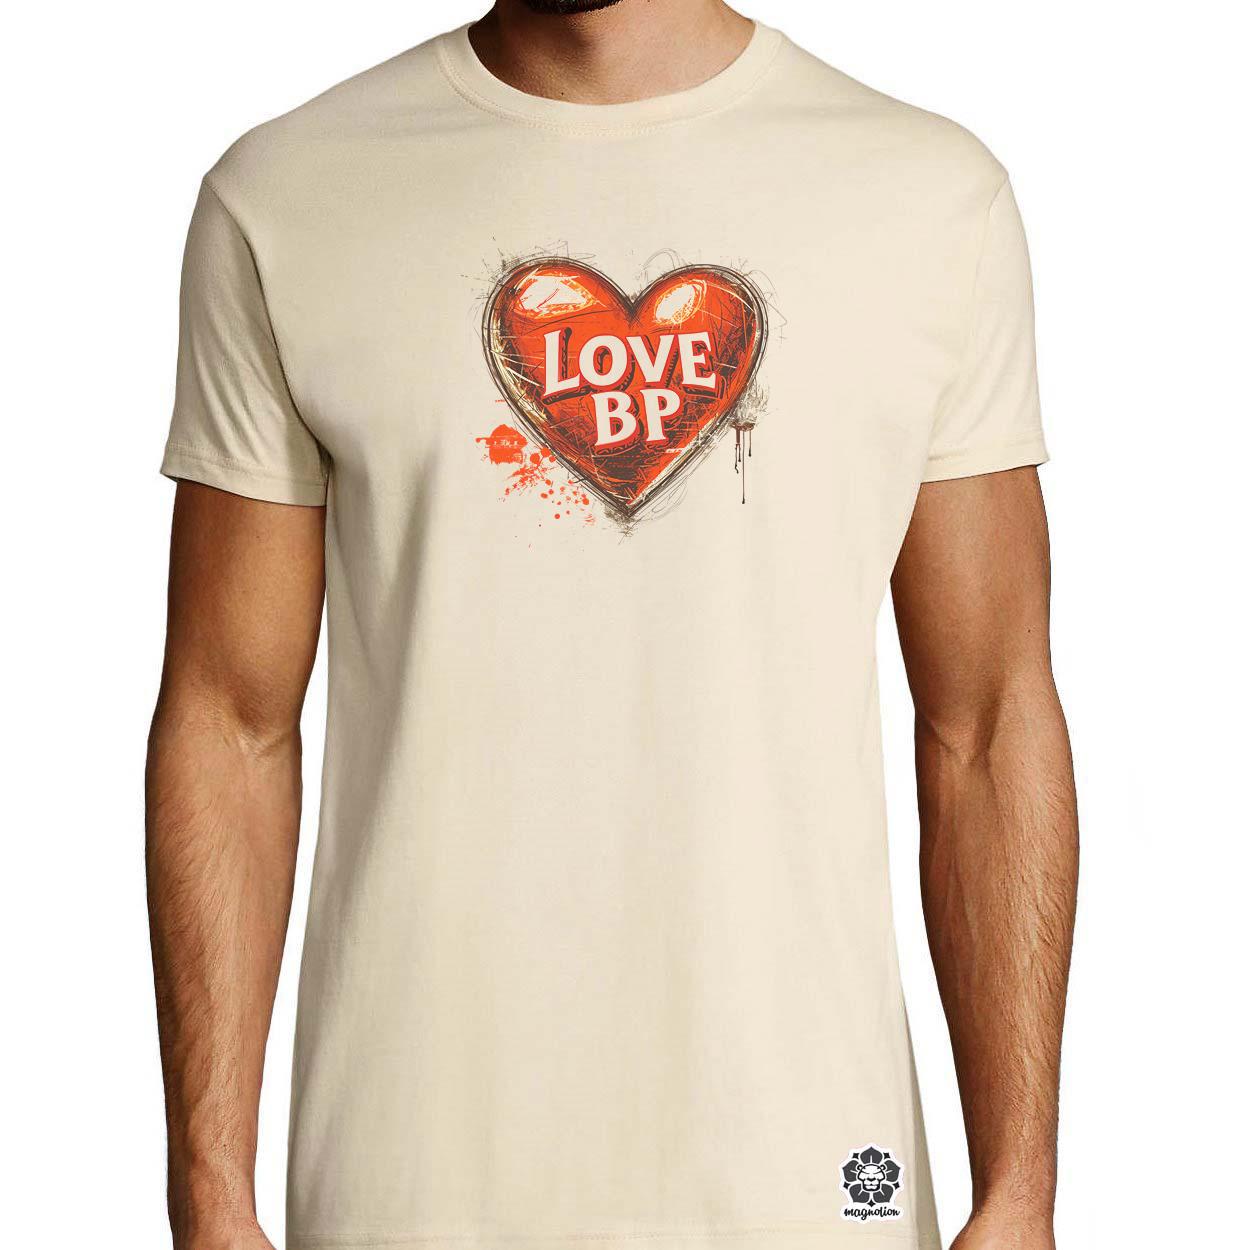 Love BP v23